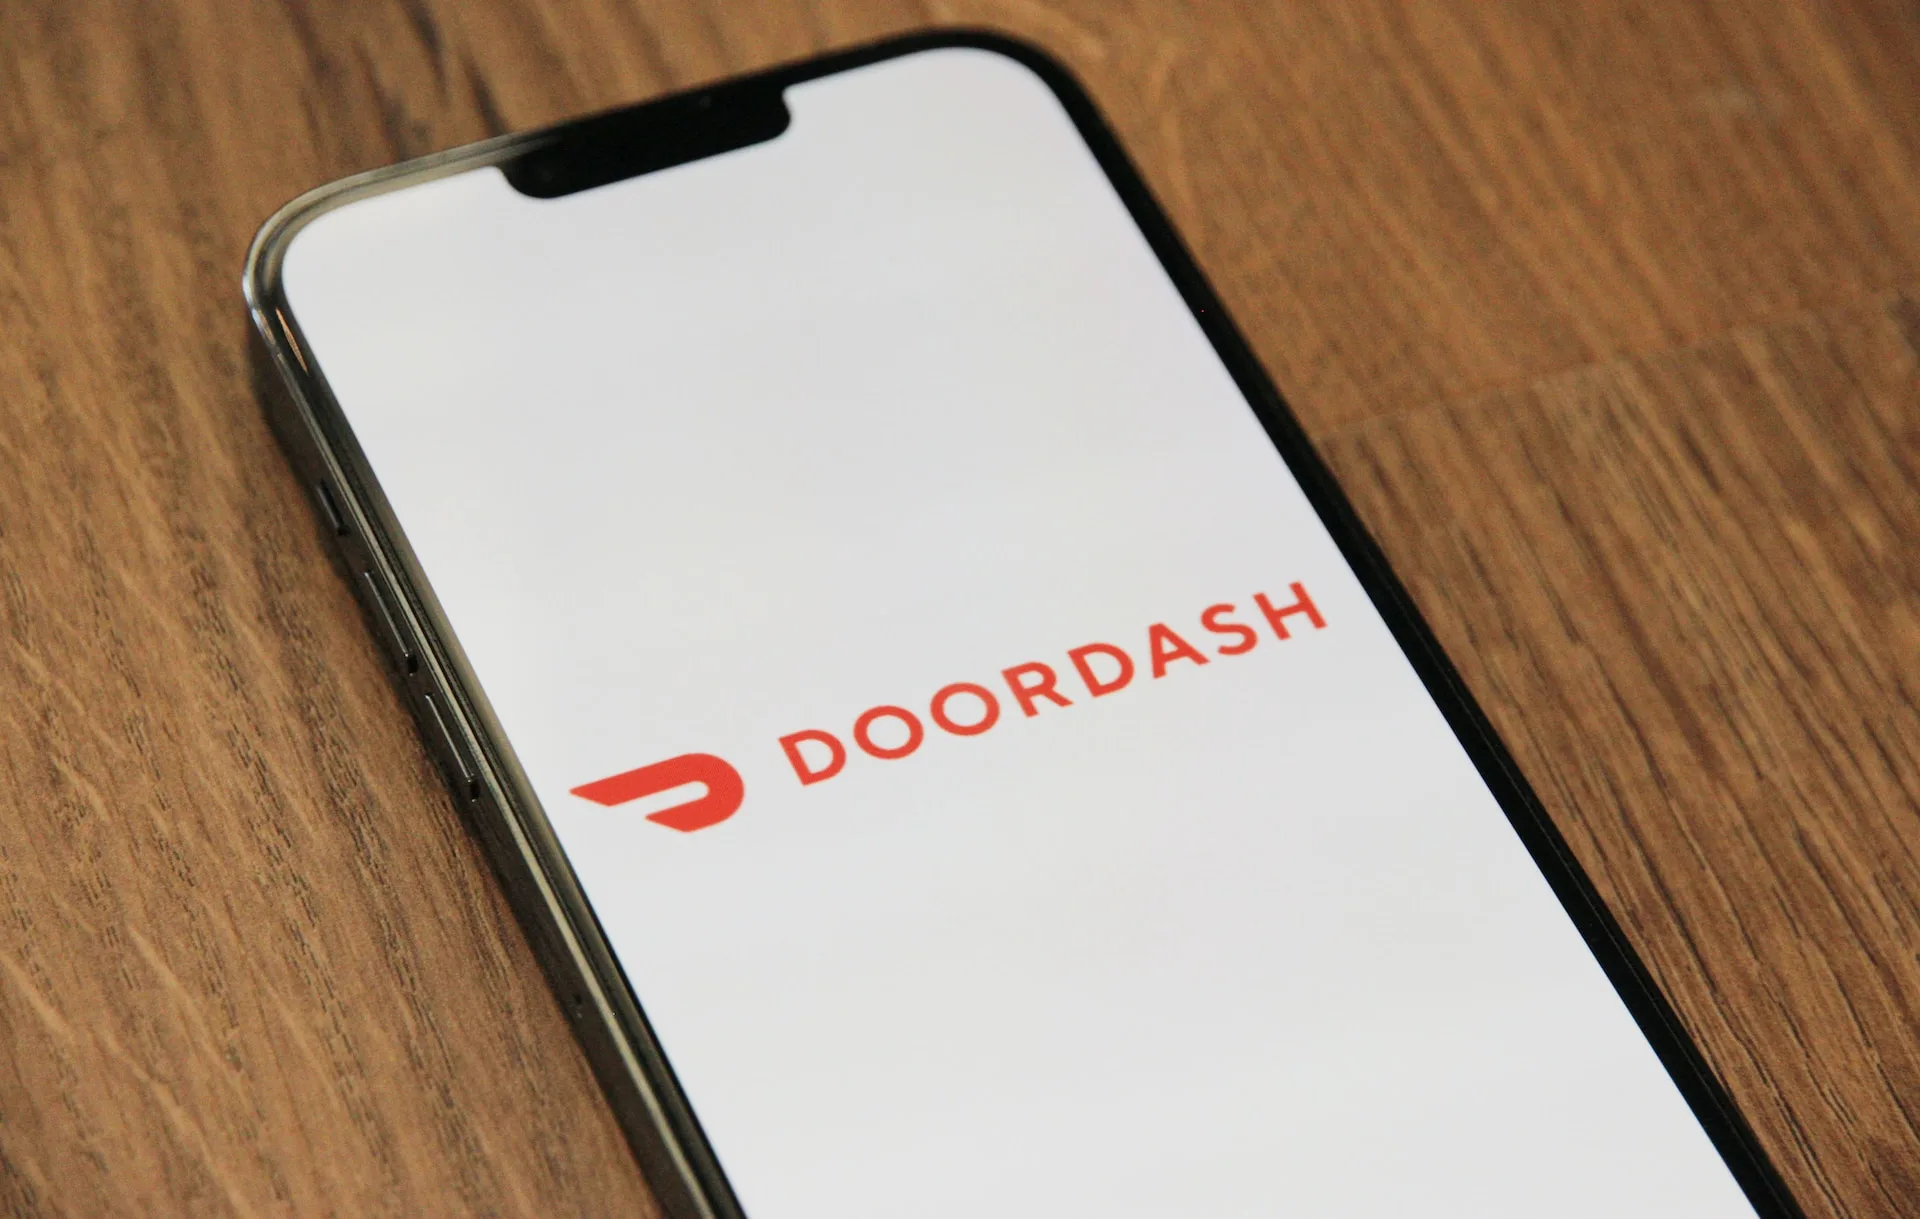 Doordash app on smartphone